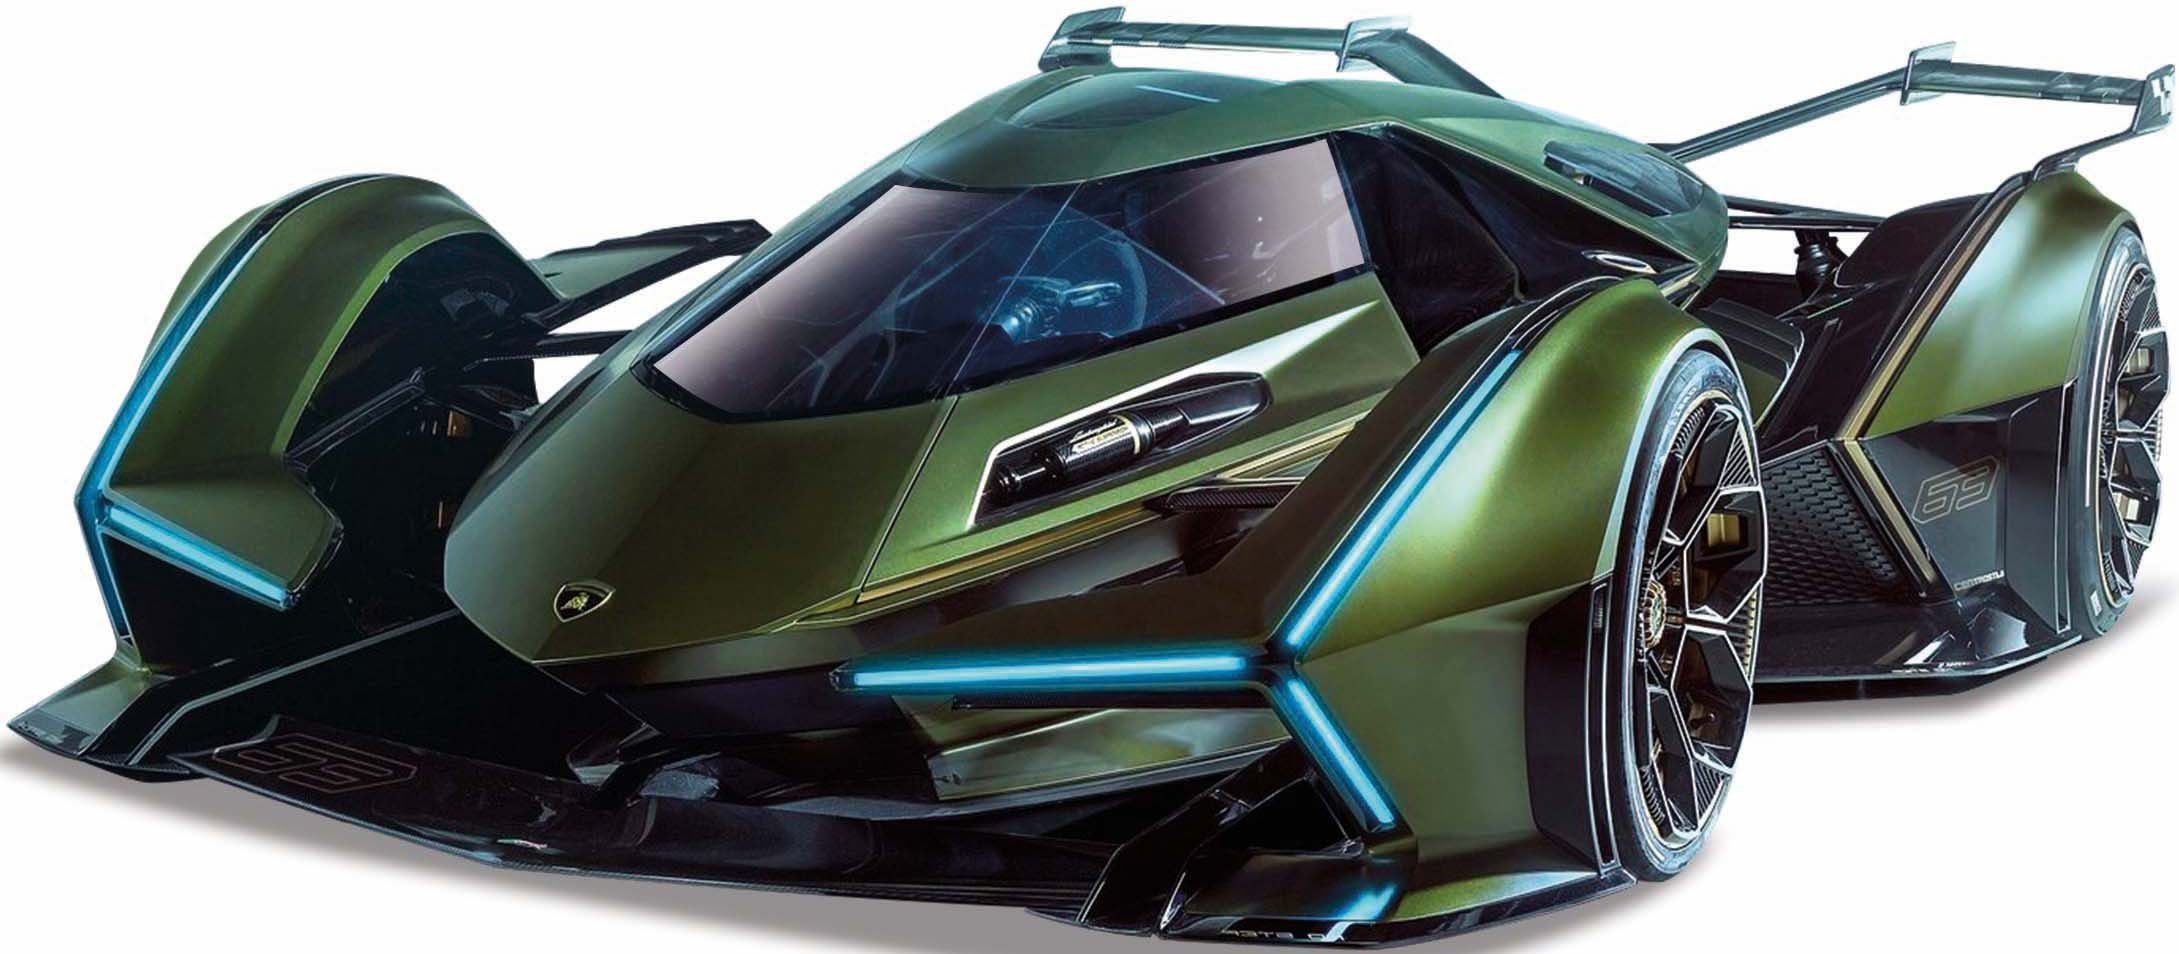 Image of Maisto® Sammlerauto »Lamborghini V12 Vision Grand Turismo«, Maßstab 1:18